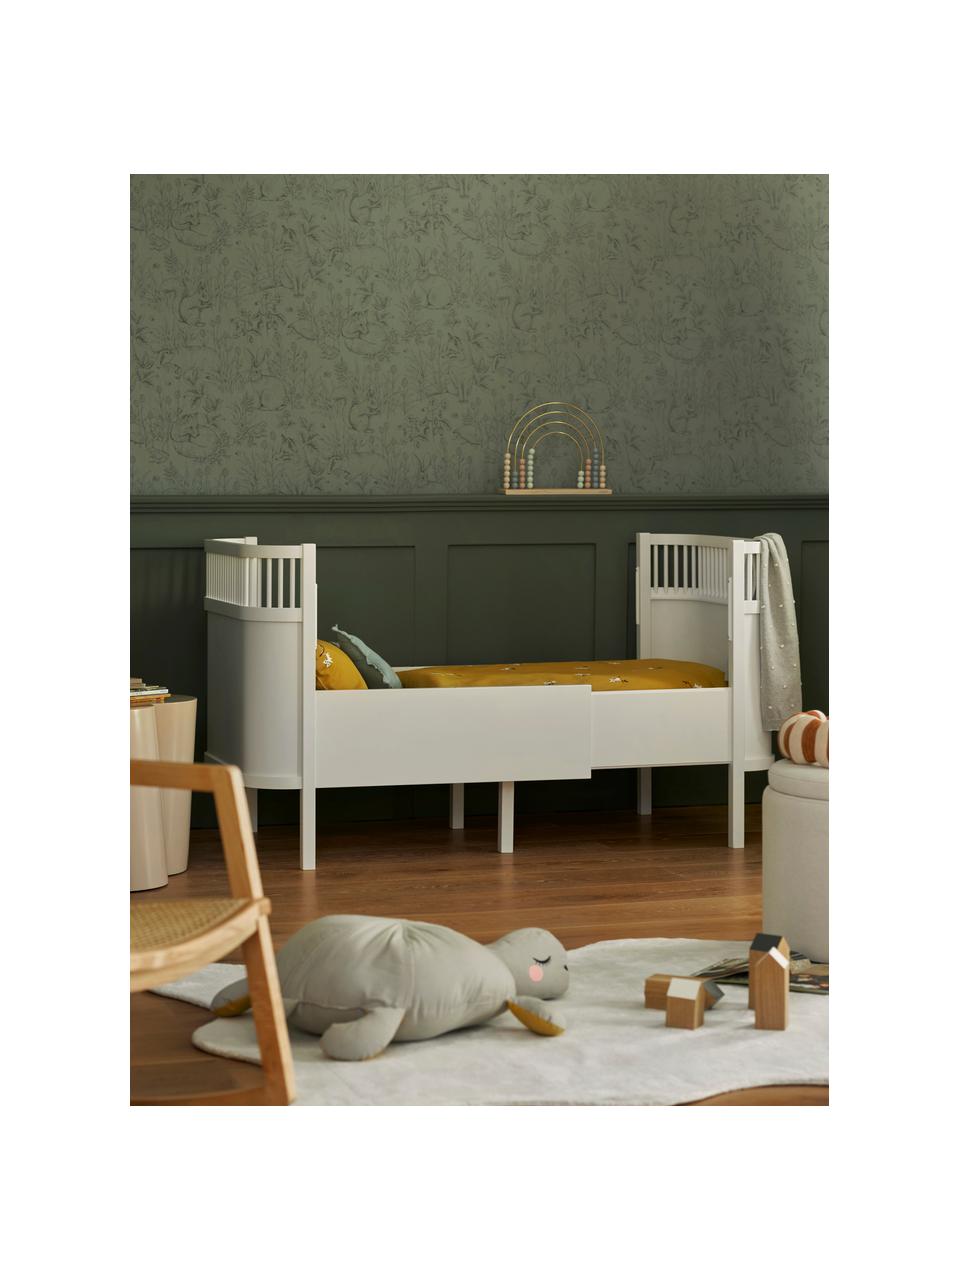 Rozkladacia drevená posteľ Junior Grow, 90 x 165x205 cm, Brezové drevo, lakované farbou bez obsahu VOC, Brezové drevo, biela lakované, Š 90 x D 160/200 cm